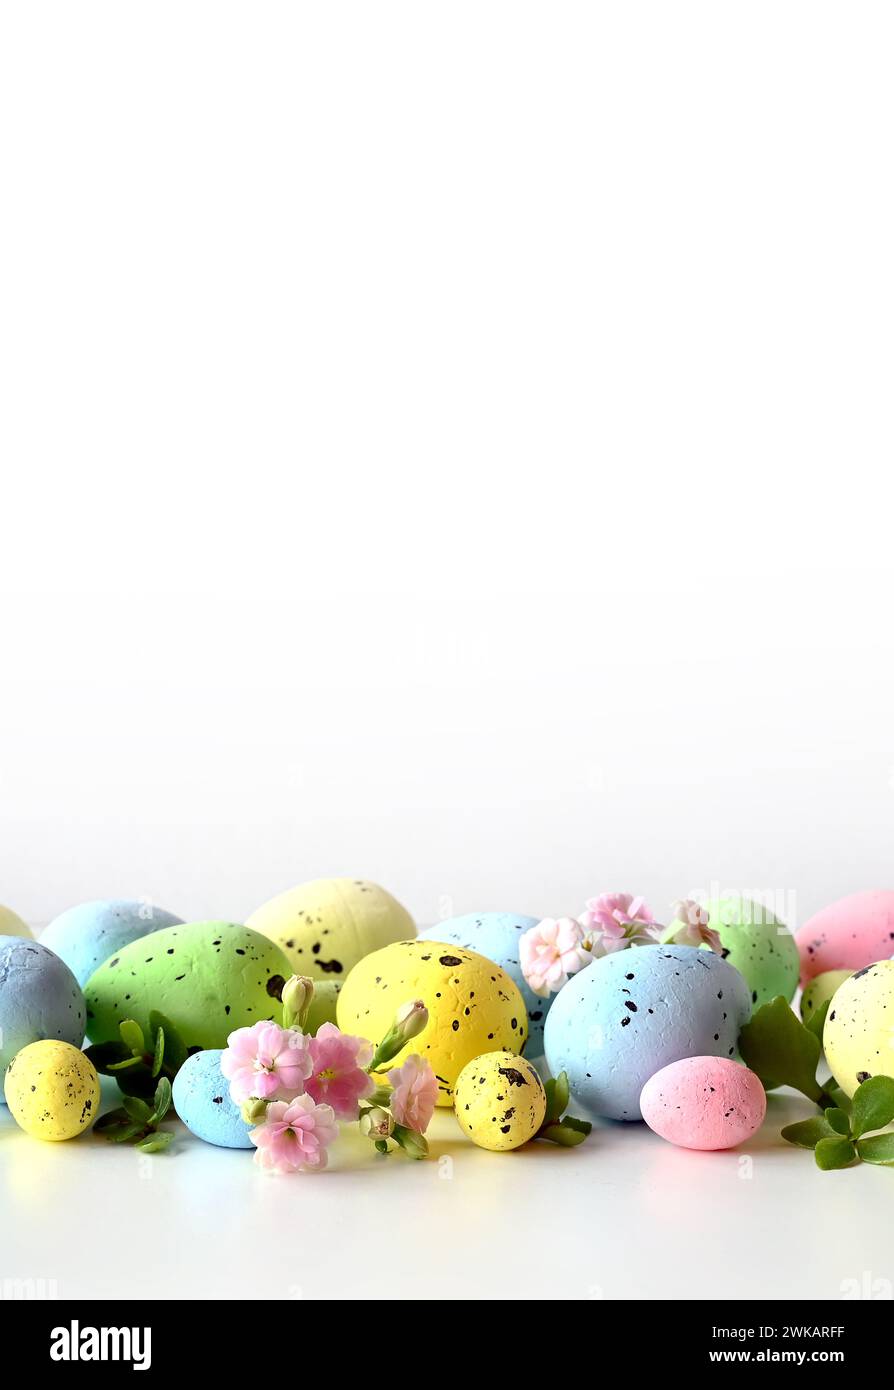 Collection d'oeufs de couleurs élégantes avec des fleurs pour la célébration de Pâques sur fond blanc. Concept de vacances. Banque D'Images